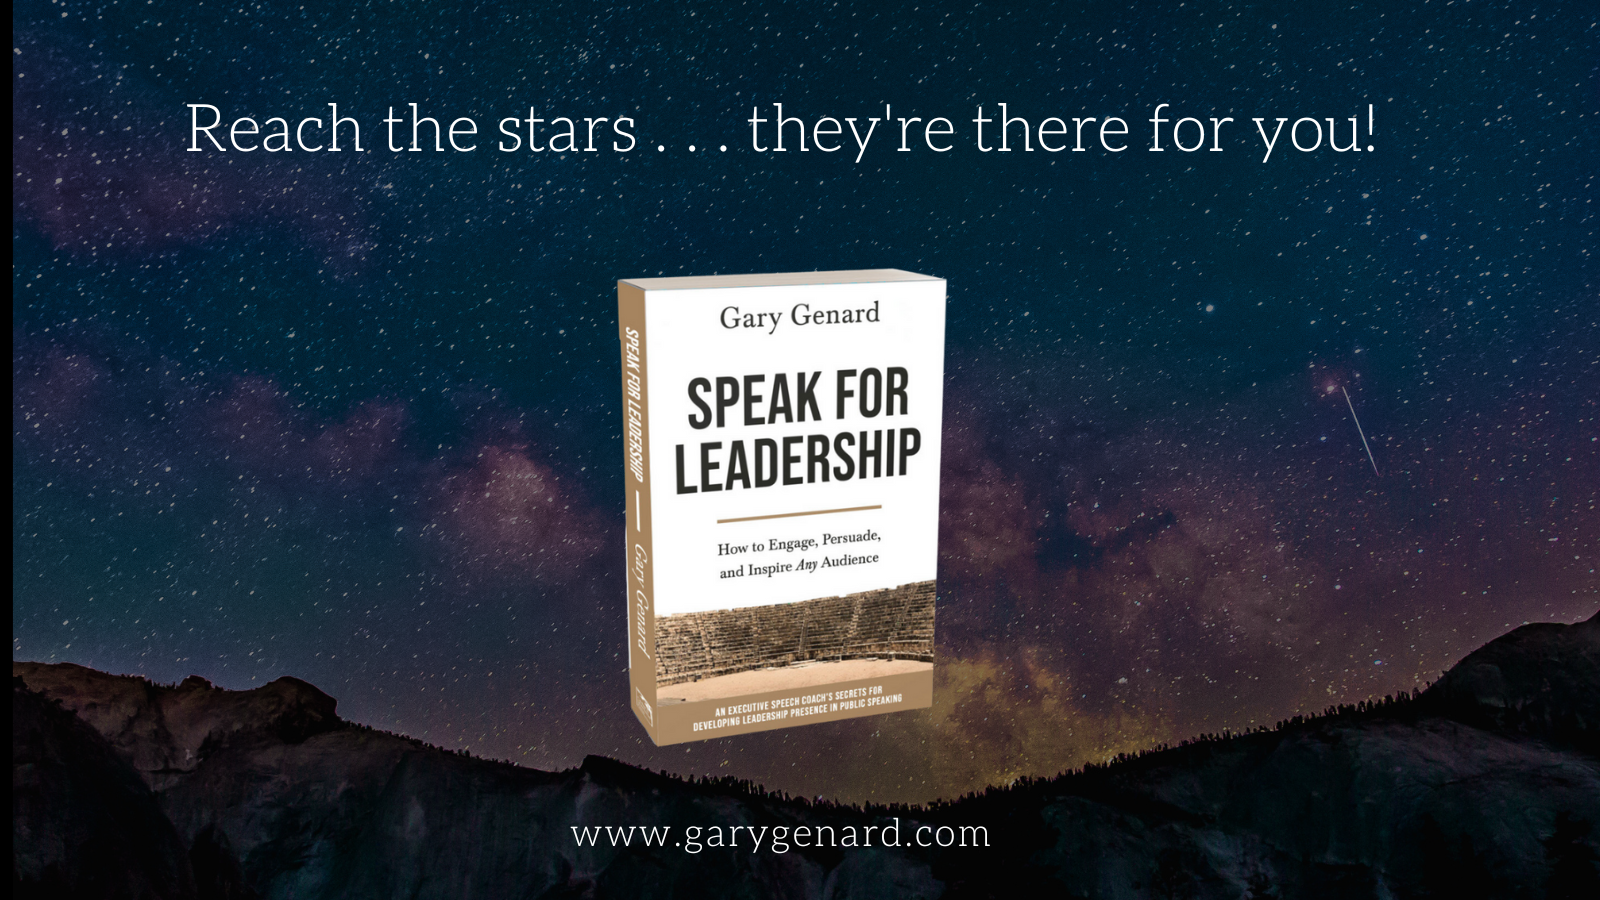 Dr. Gary Genard's book, Speak for Leadership: An Executive Speech Coach's Secrets